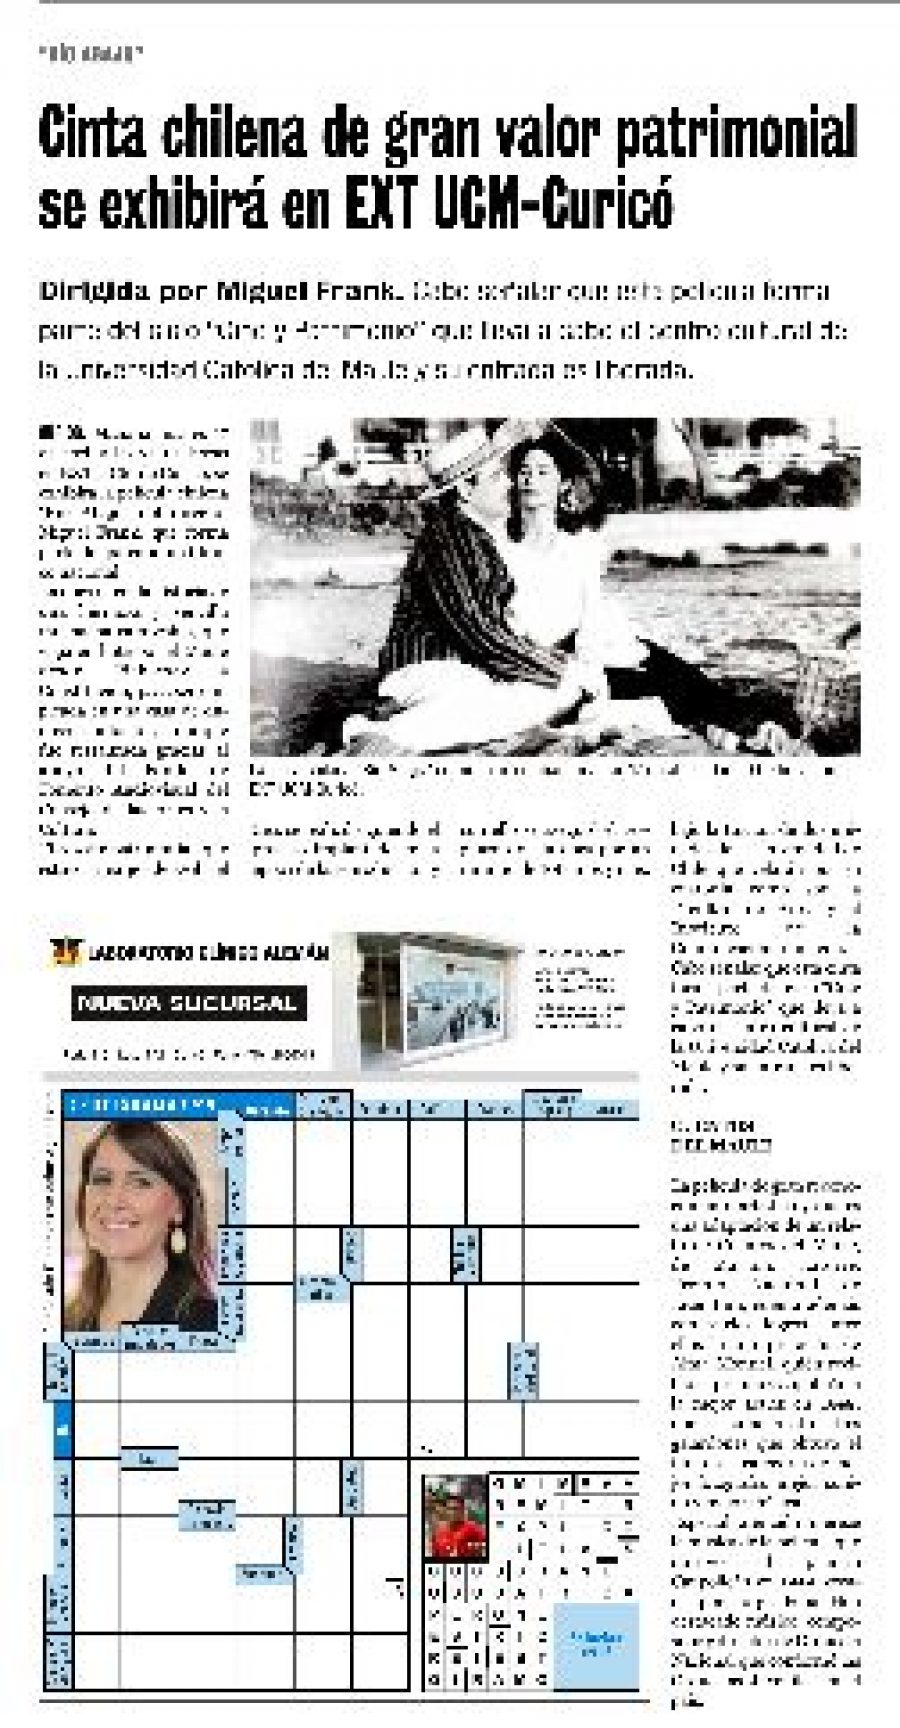 16 de abril en Diario La Prensa: “Cinta chilena de gran valor patrimonial se exhibirá en EXT Curicó”